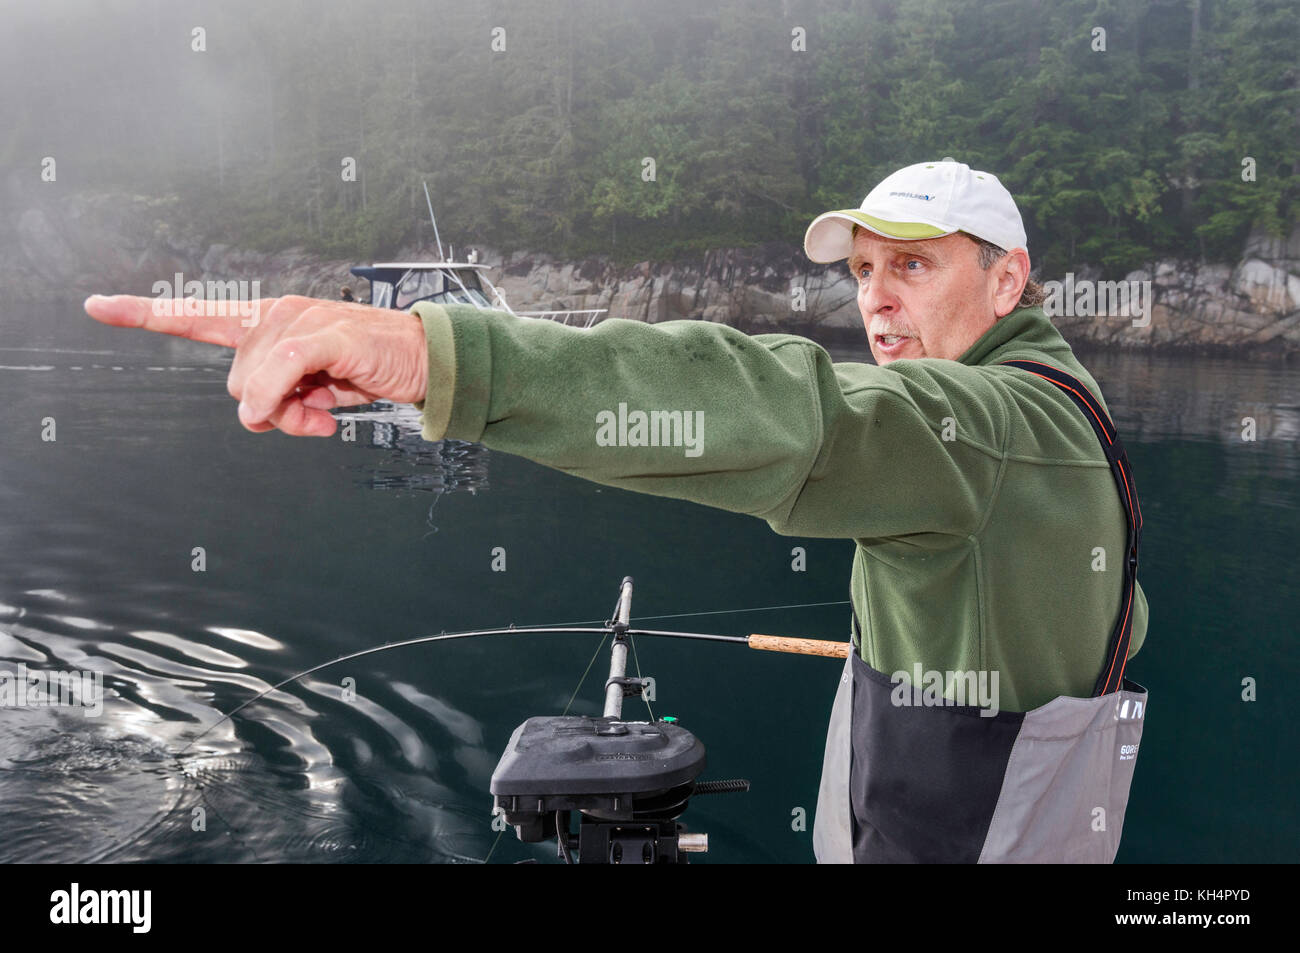 Erwachsener mittleren Alters mit Angelrute auf dem Boot, der darauf hinweist, dass ein anderes Boot vorbeikommt, nebeliger Morgen in der Johnstone Strait vor Vancouver Island, British Columbia Stockfoto